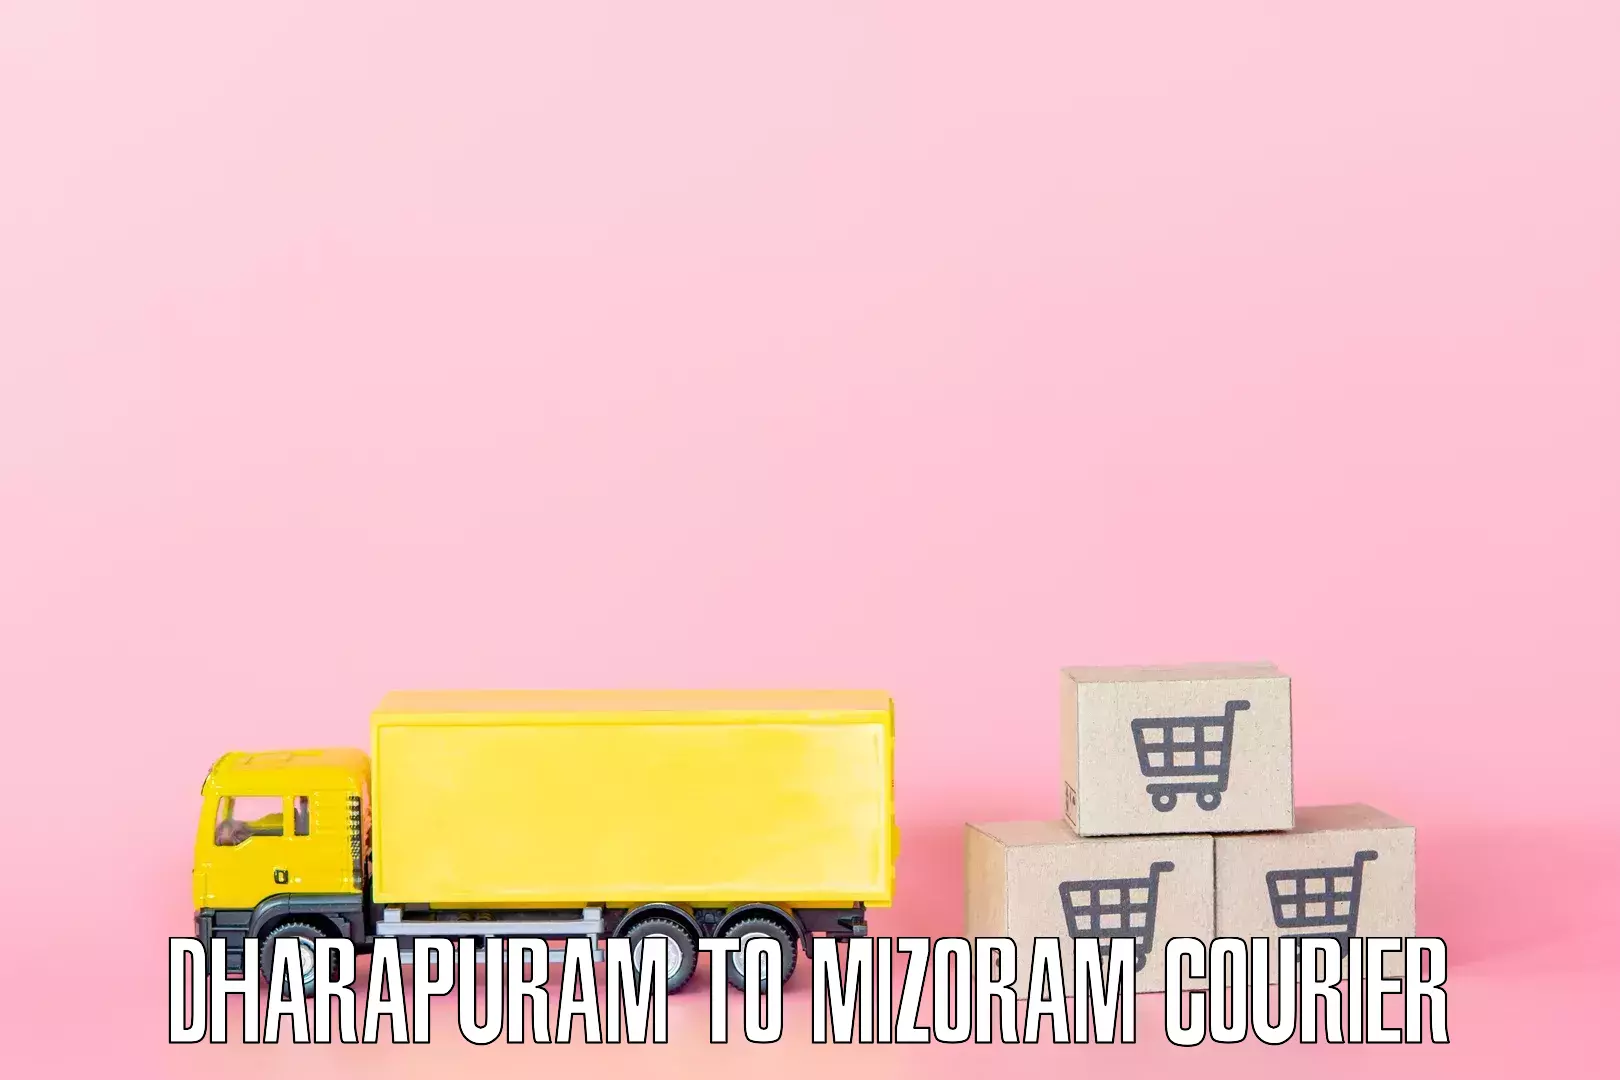 Furniture moving service Dharapuram to NIT Aizawl